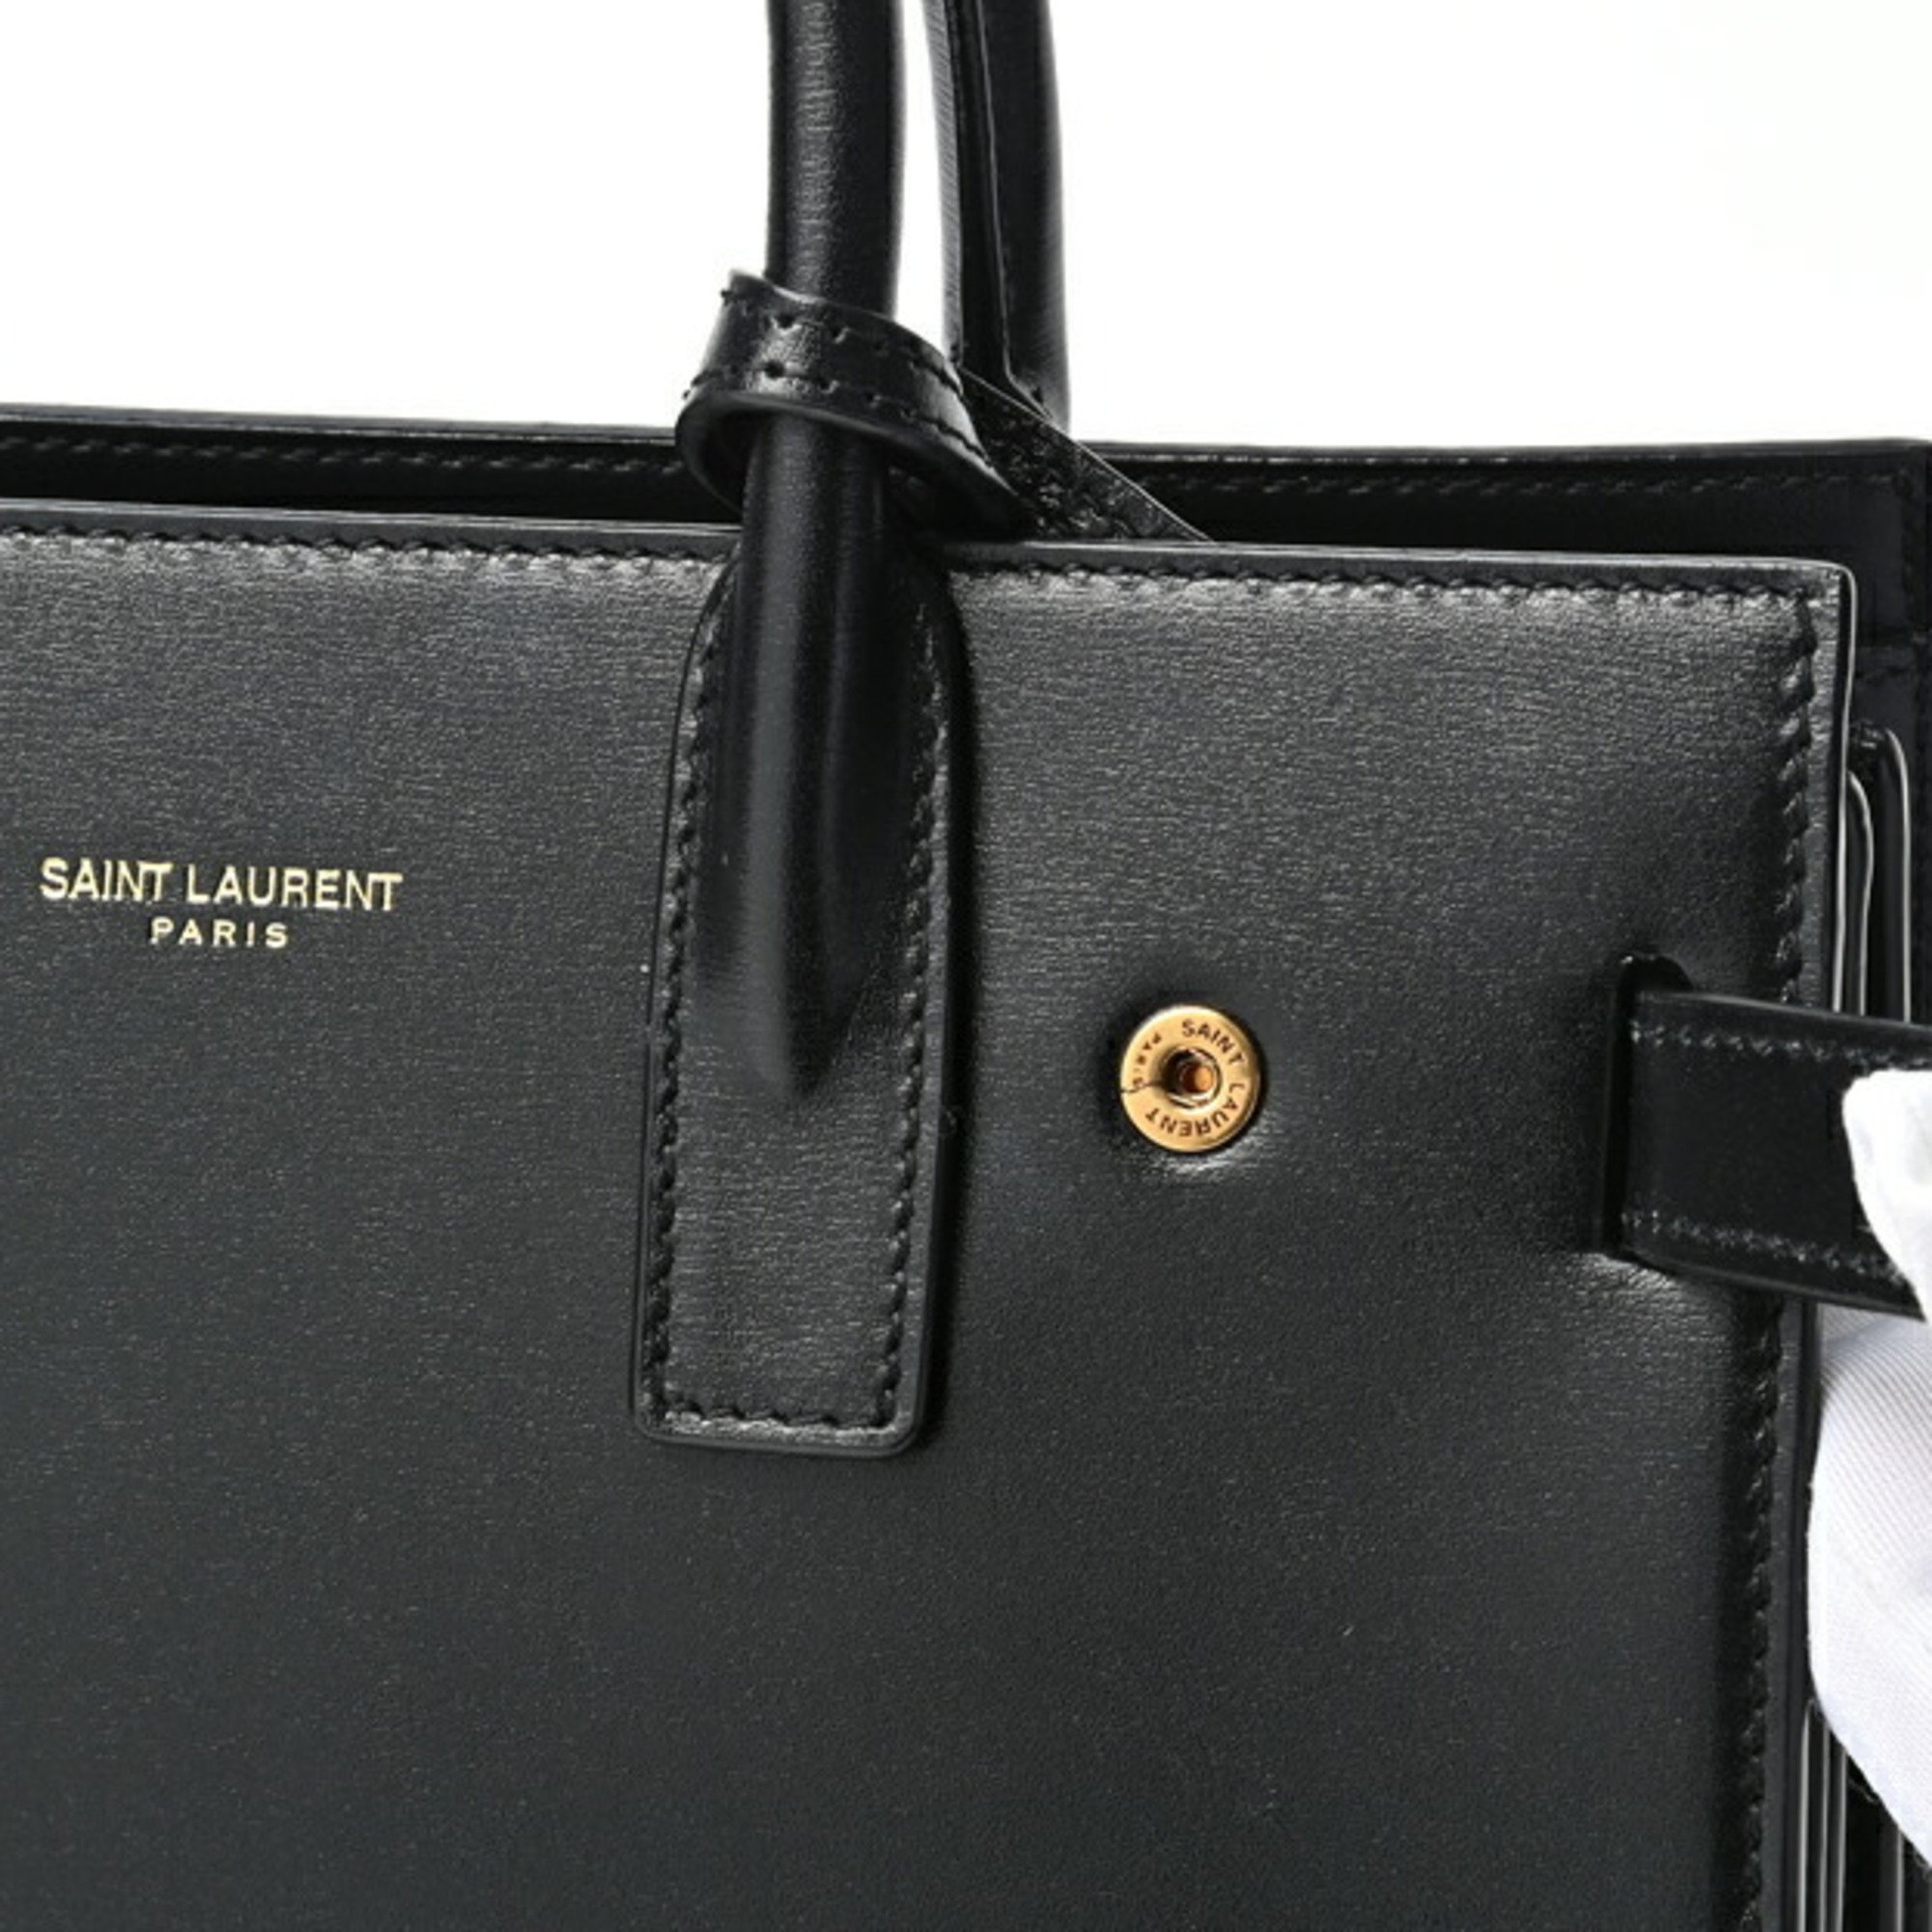 Yves Saint Laurent Saint Laurent Sac de Jour Nano 392035 Smooth Leather